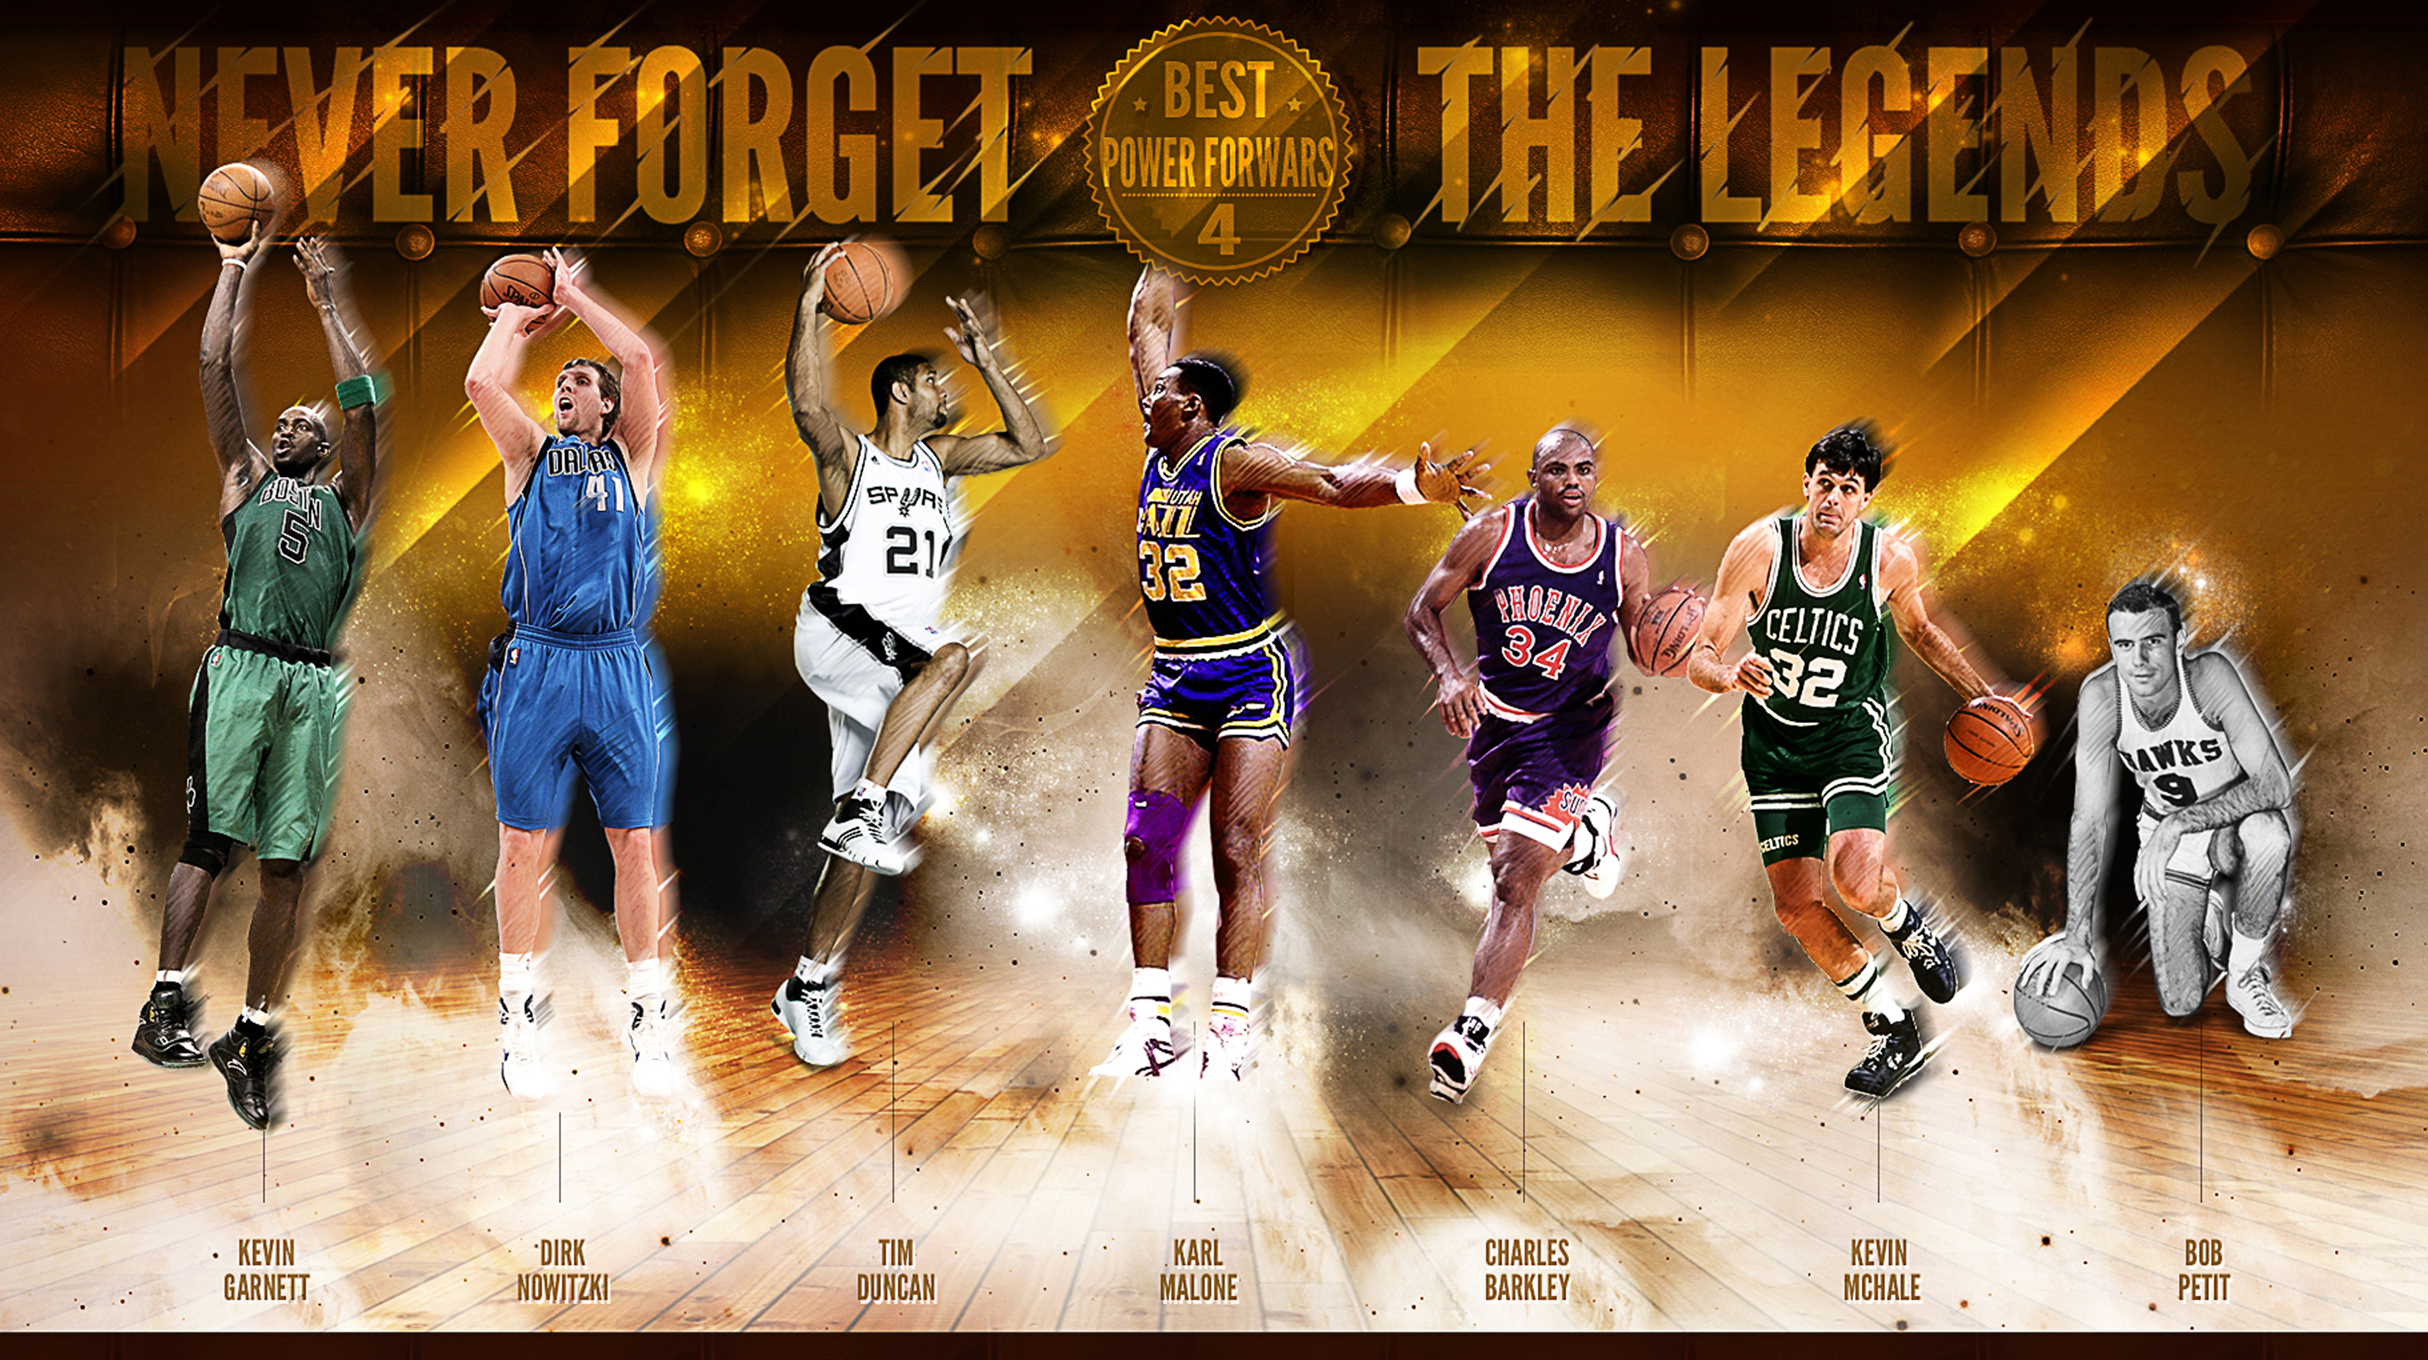 Kevin Garnett NBA Legend Wallpaper  Basketball Wallpapers at